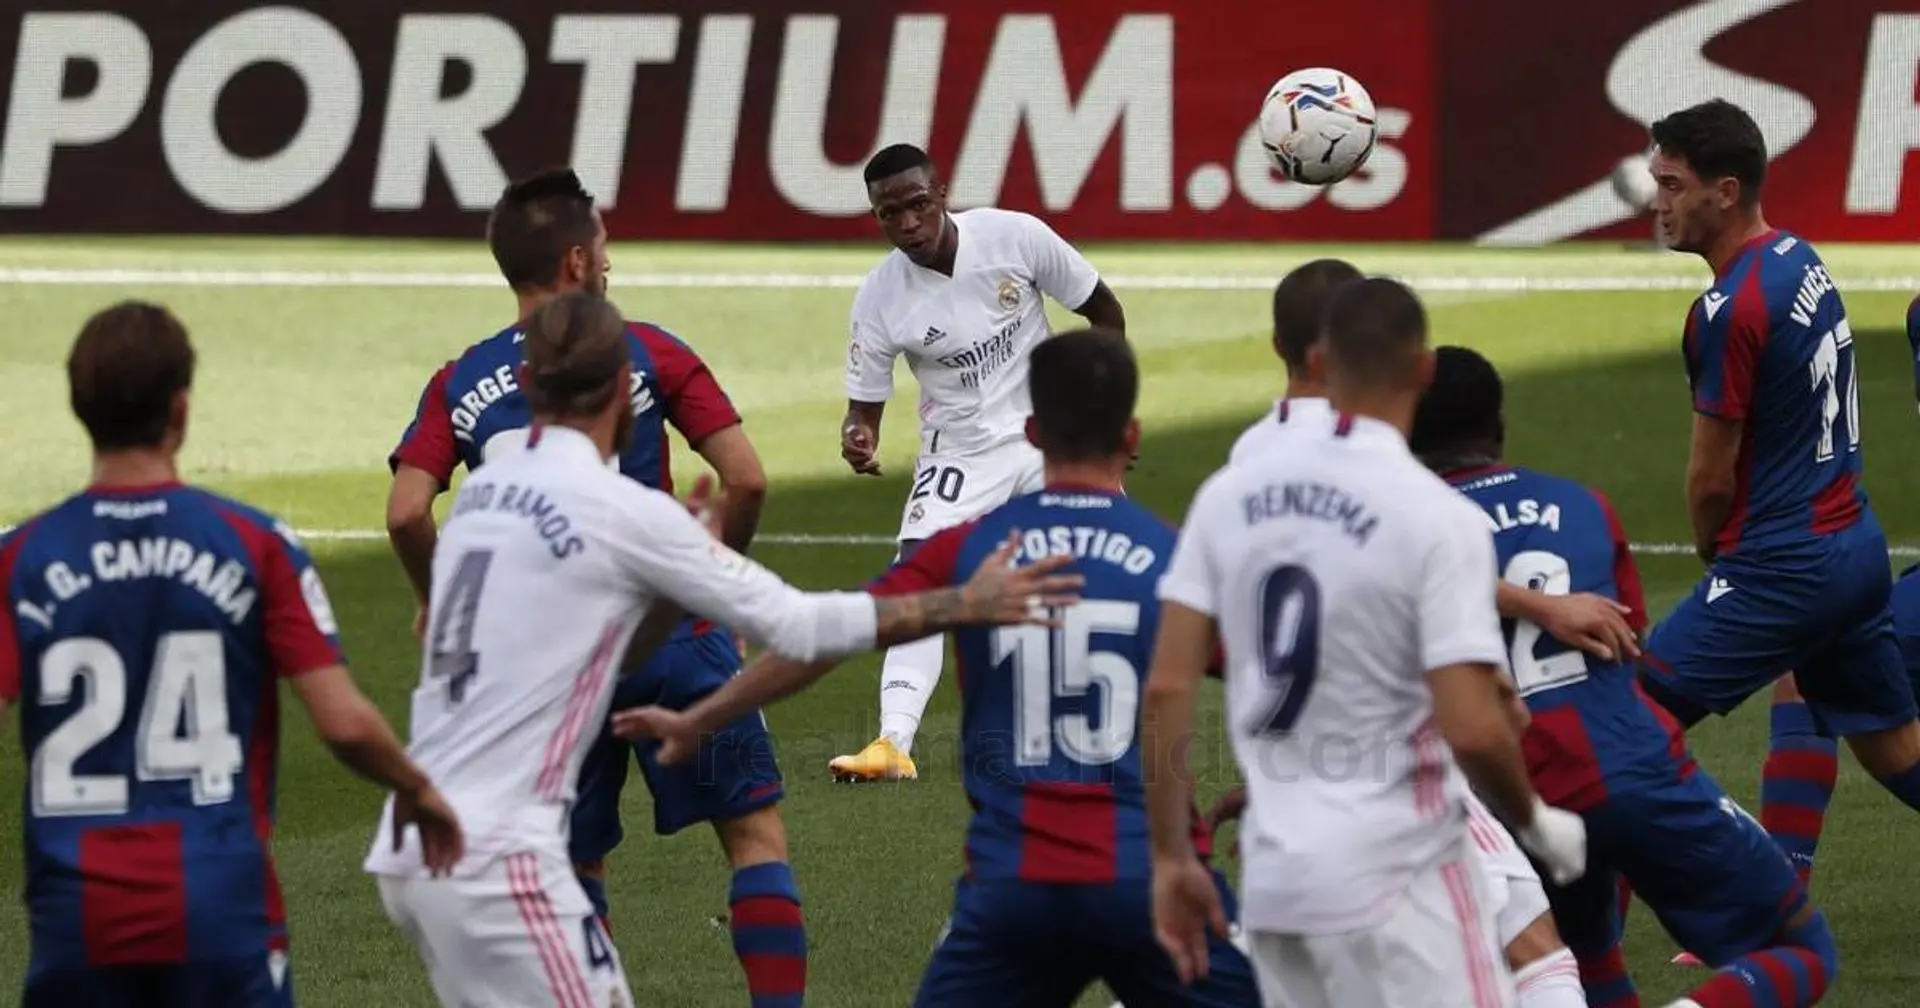 Courtois - 9, Benzema - 5.5: Notes des joueurs du Real Madrid après la victoire contre Levante 